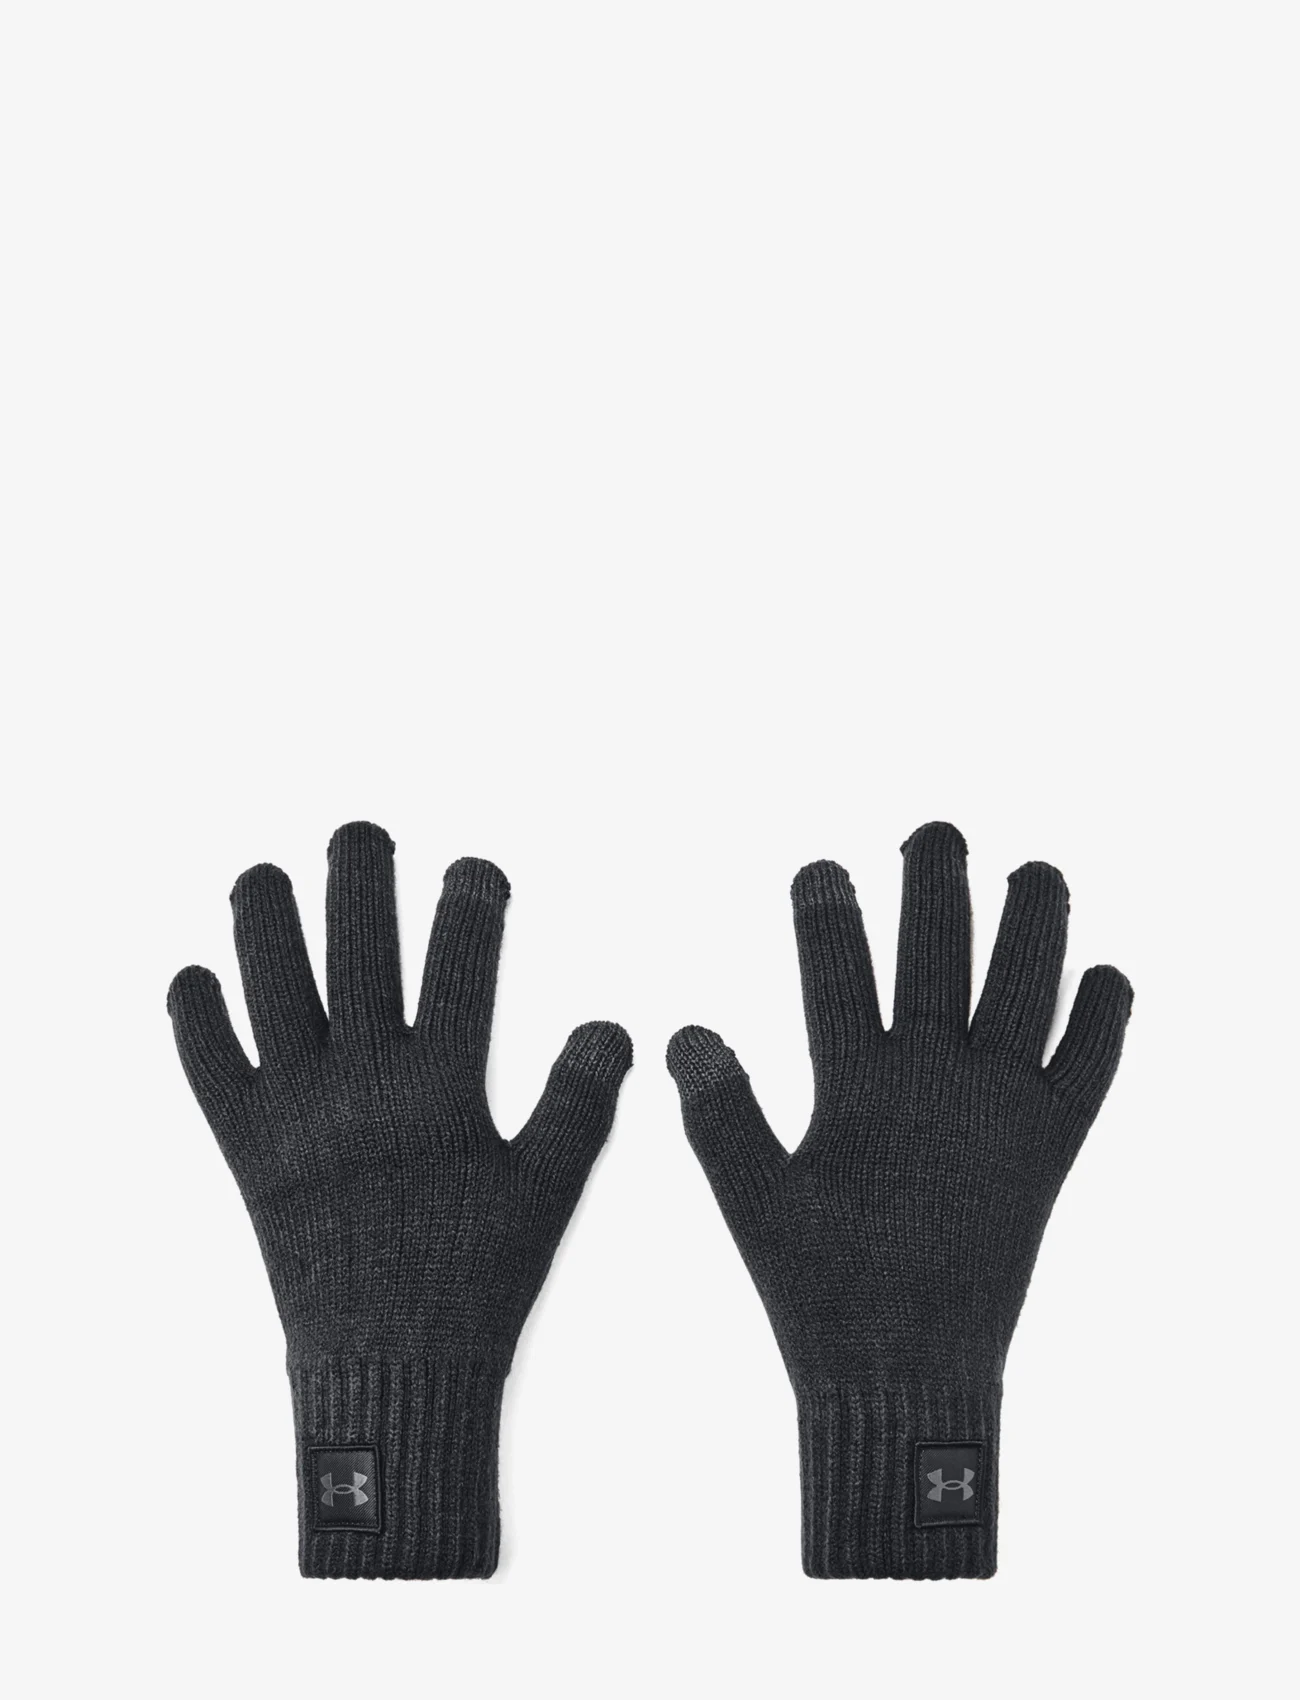 Under Armour - UA Halftime Gloves - die niedrigsten preise - black - 1